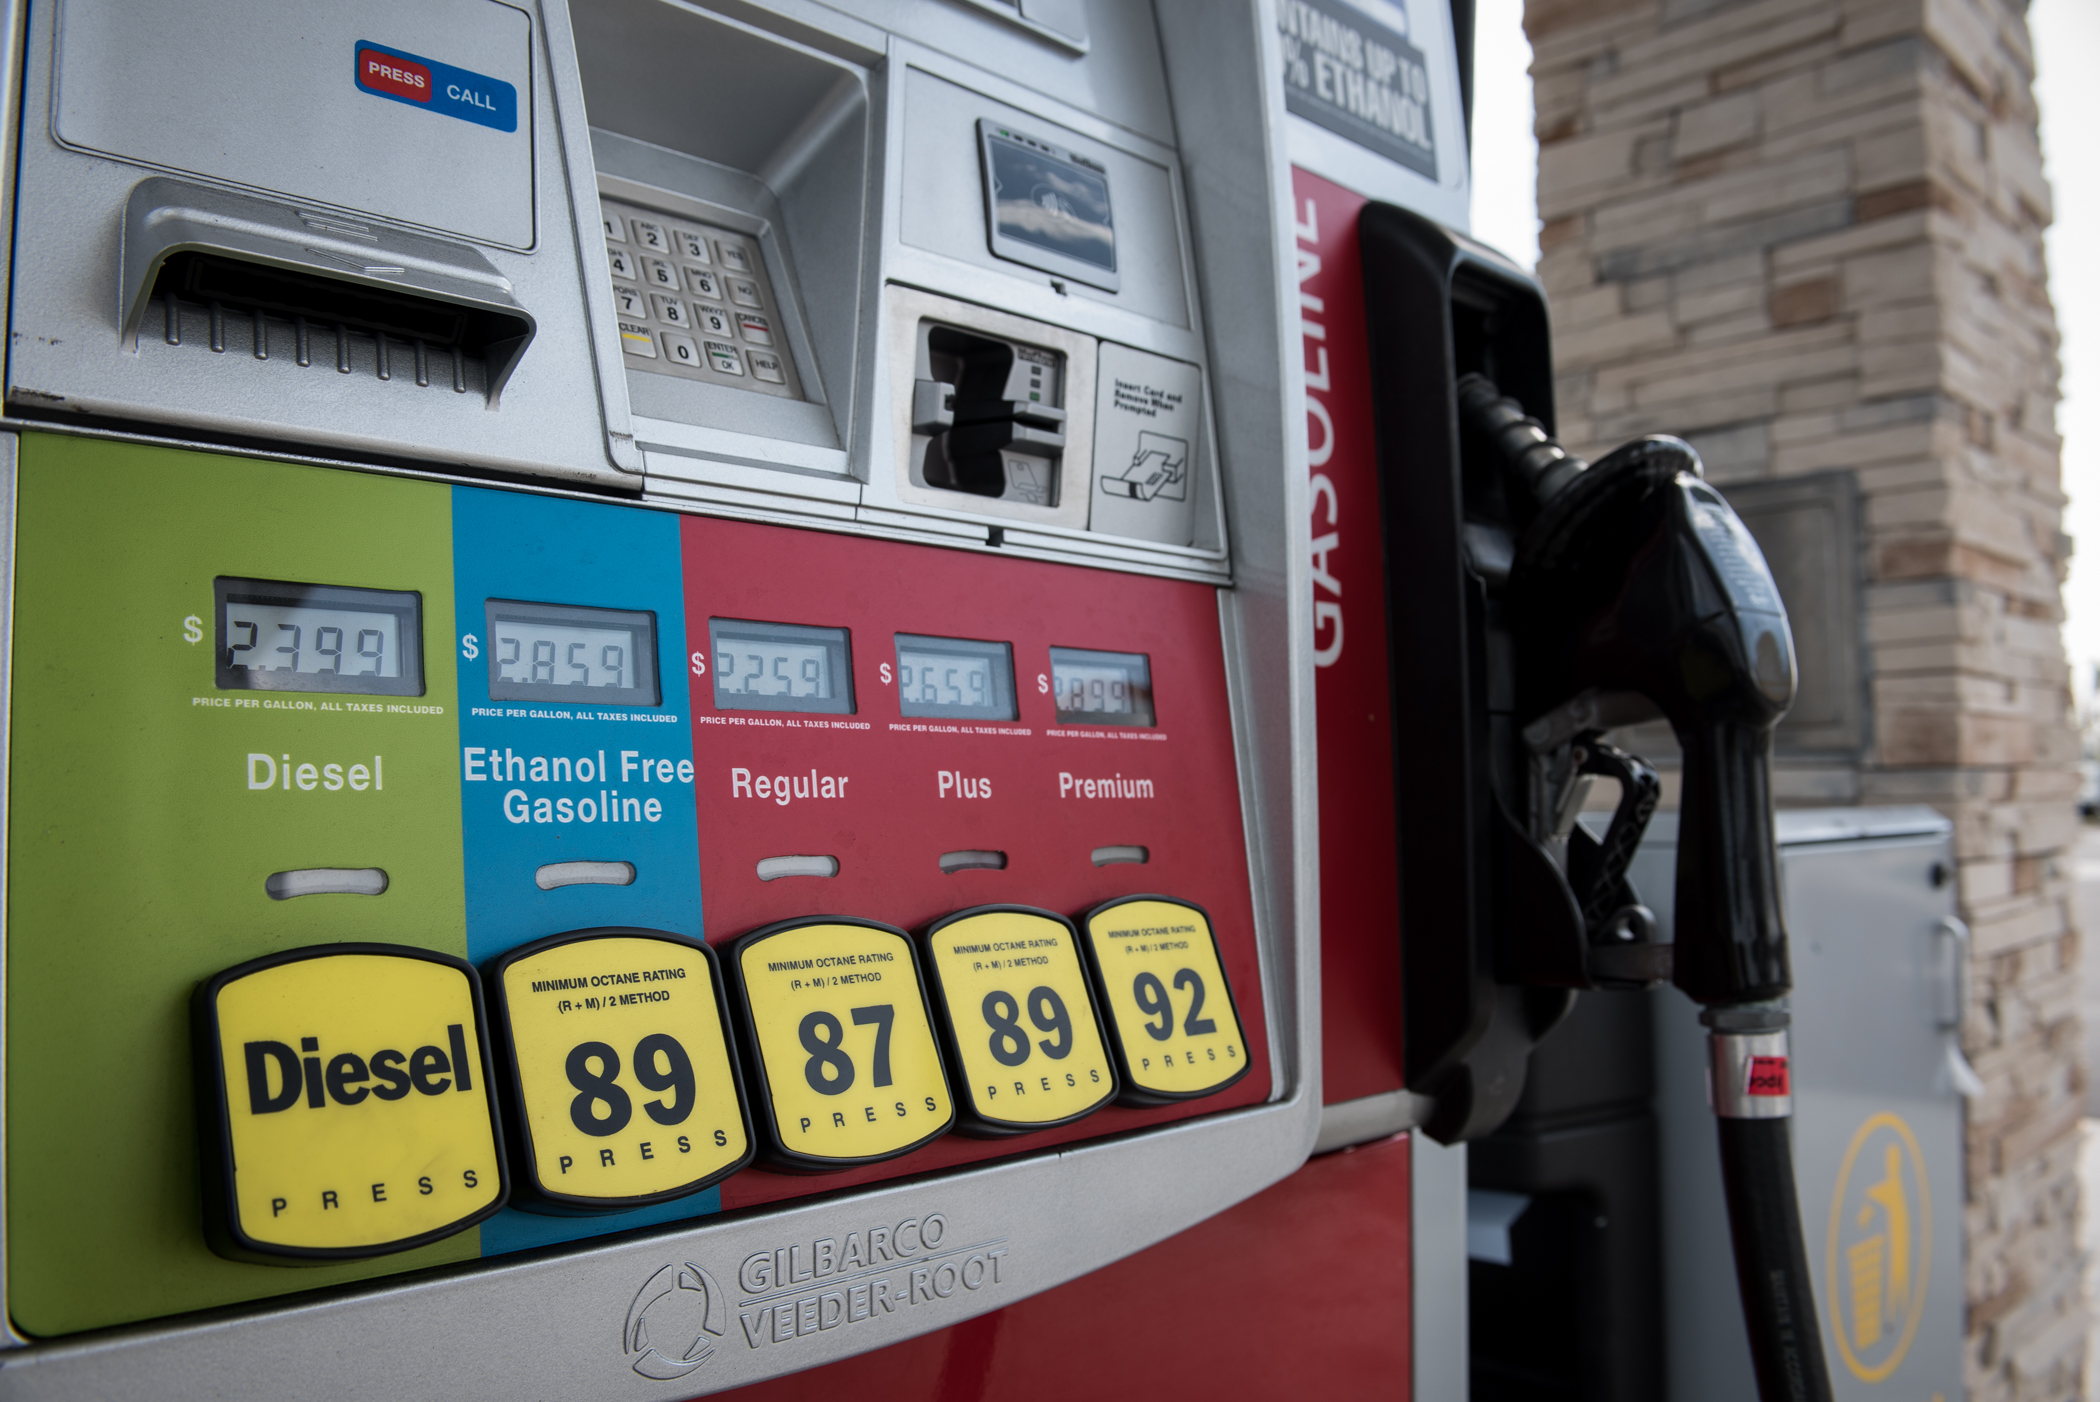 O preço médio por um galão de gasolina regular é de $2.55